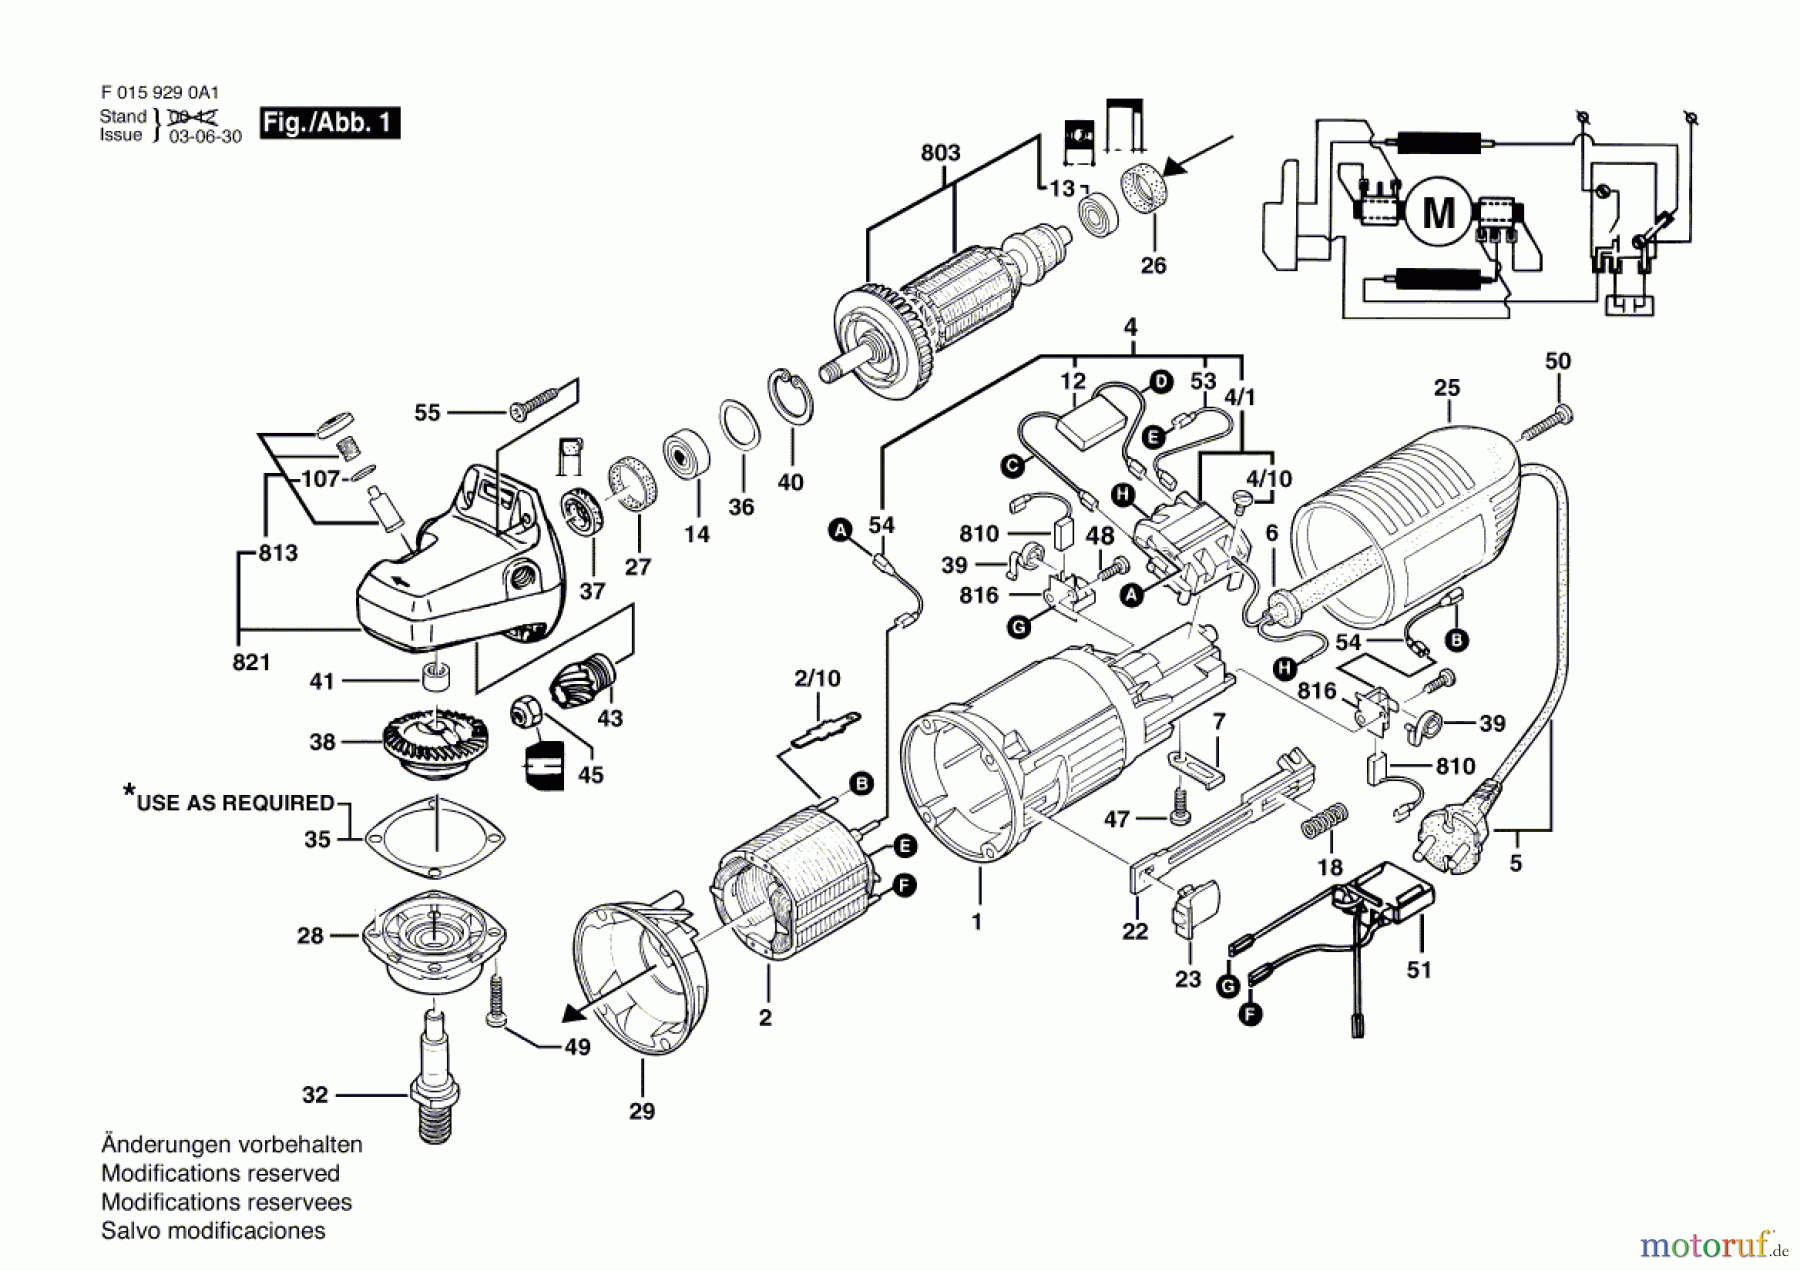  Bosch Werkzeug Winkelschleifer 9290 A1 Seite 1